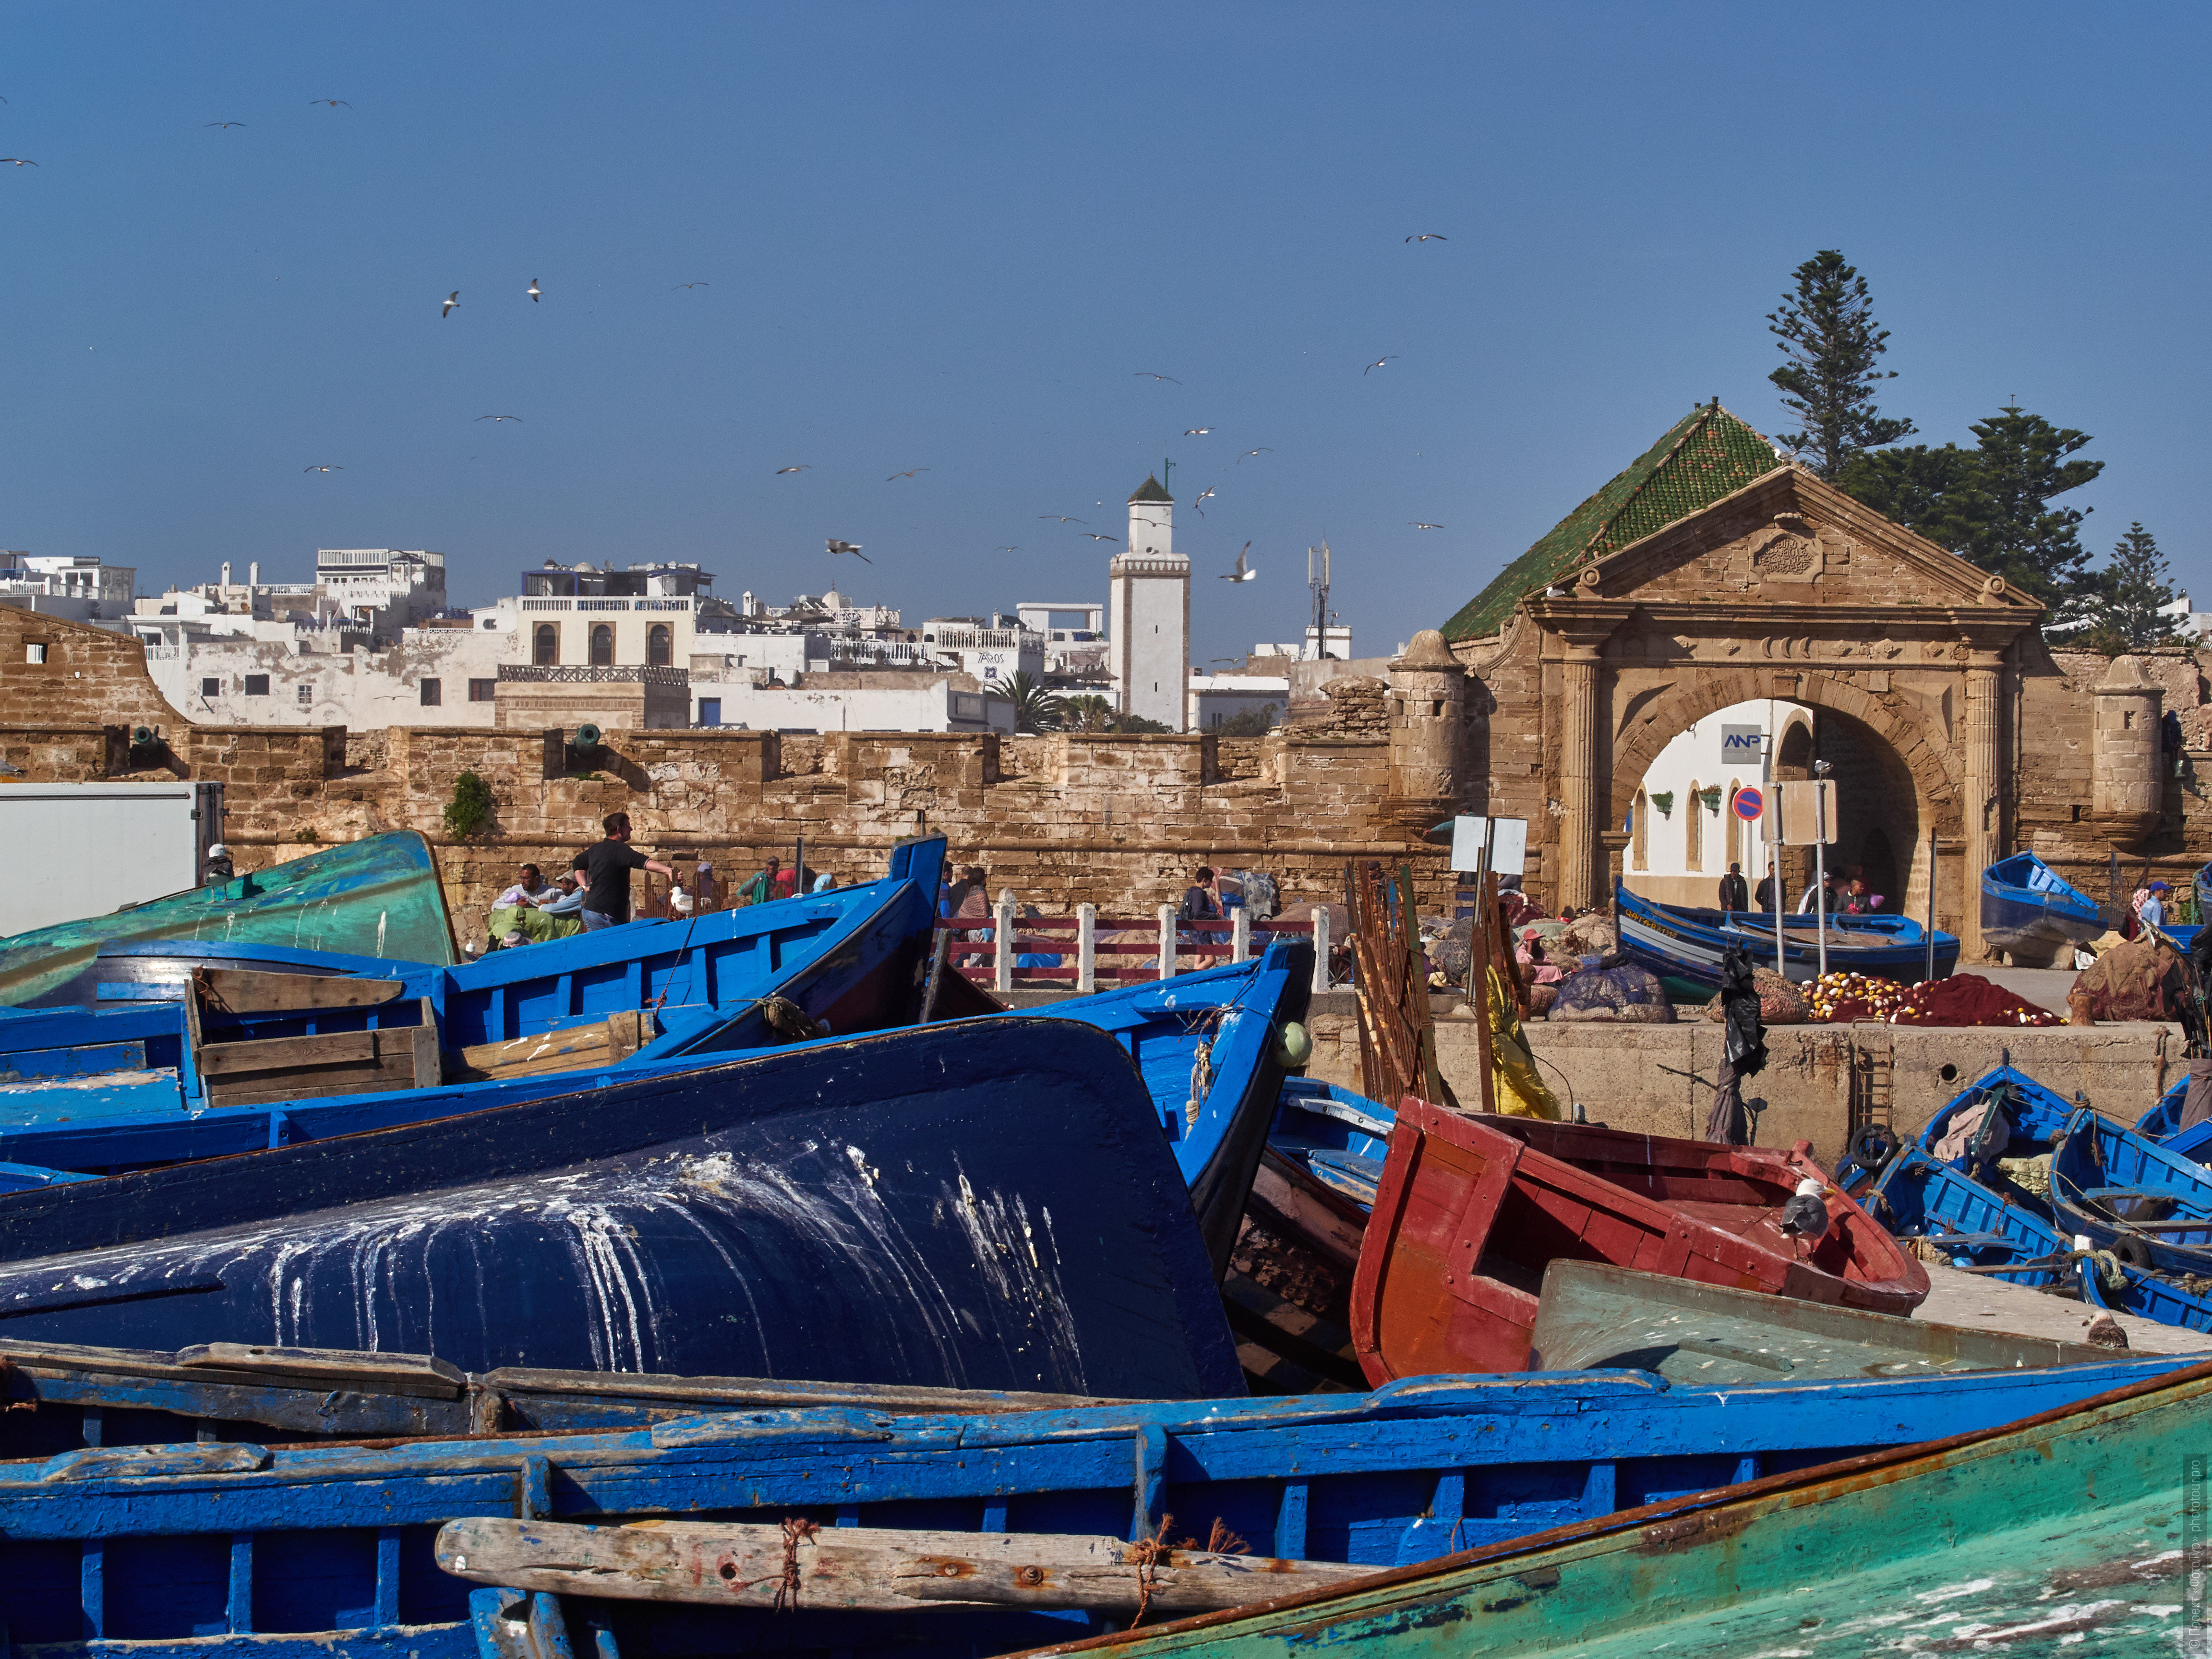 Port of Essaouira. Adventure photo tour: medina, cascades, sands and ports of Morocco, April 4 - 17, 2020.